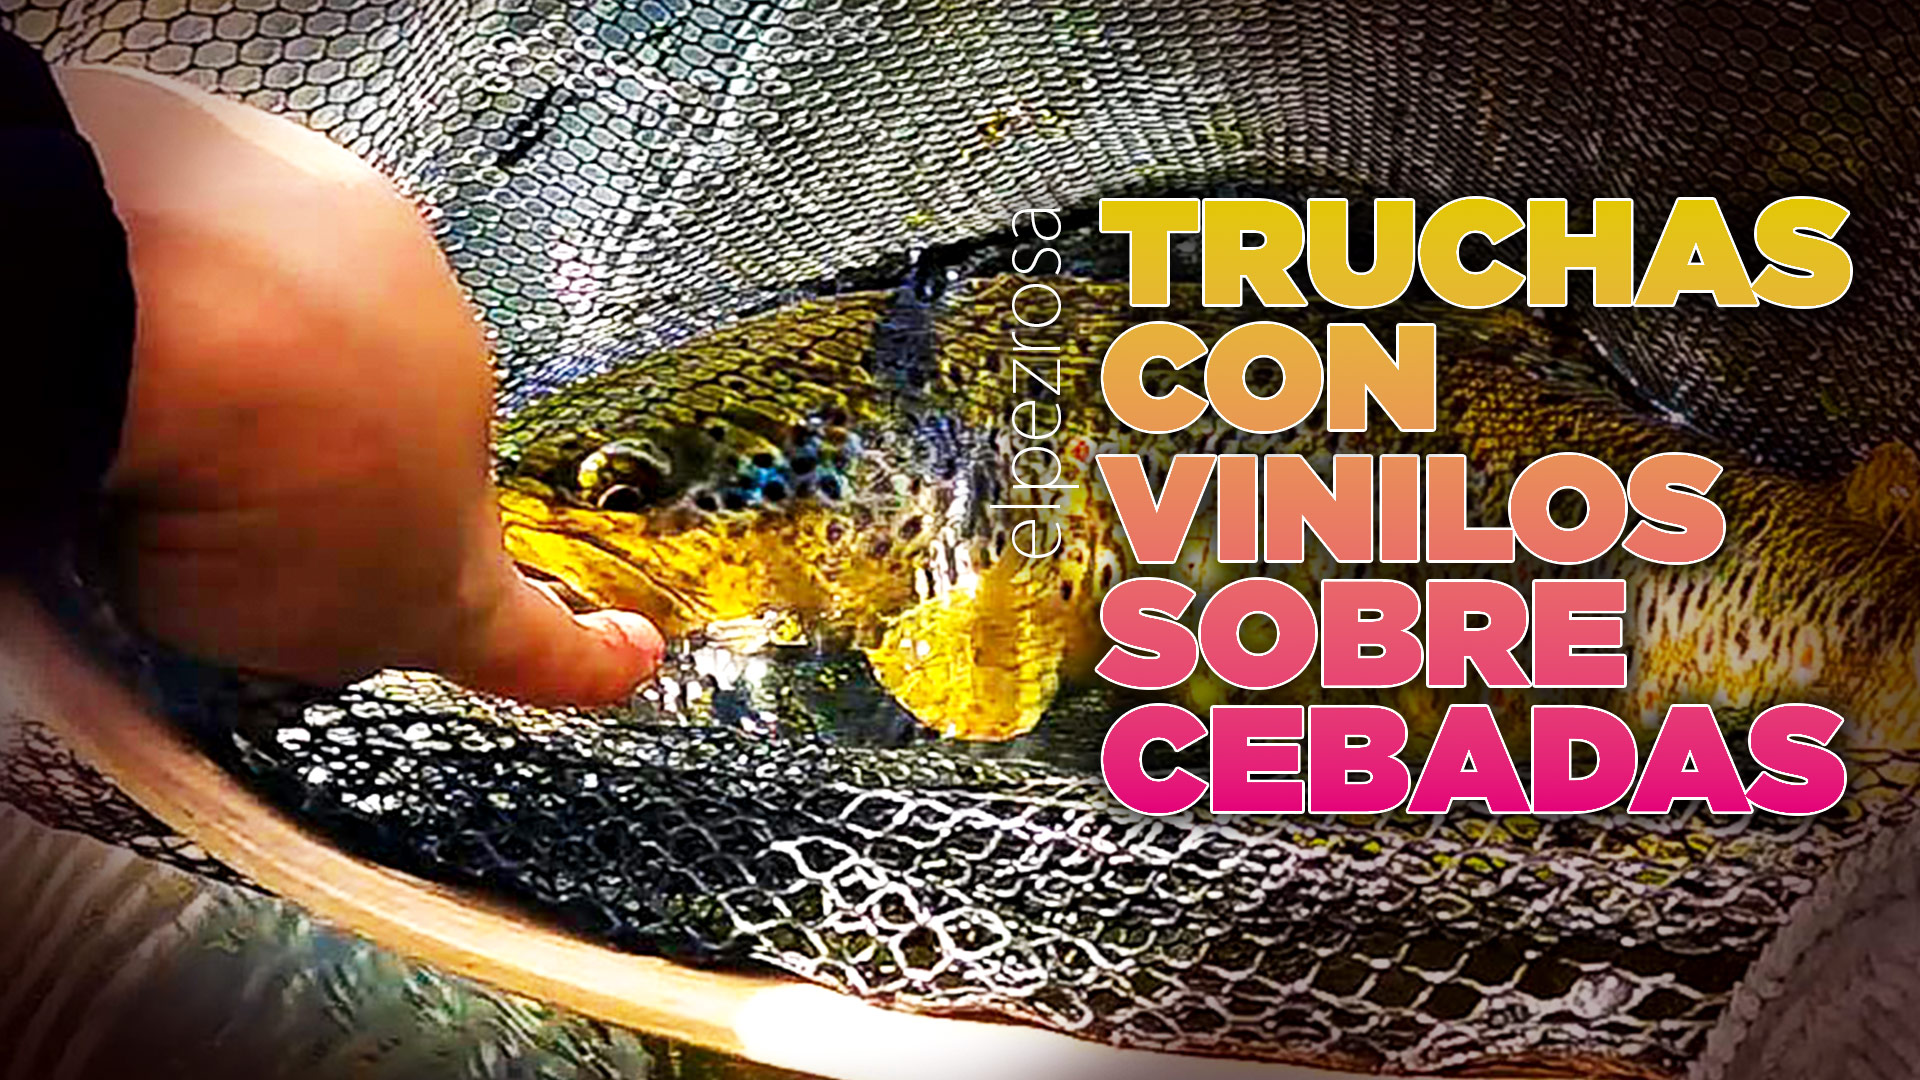 VIDEO | Como pescar truchas grades sobre cebadas con vinilos